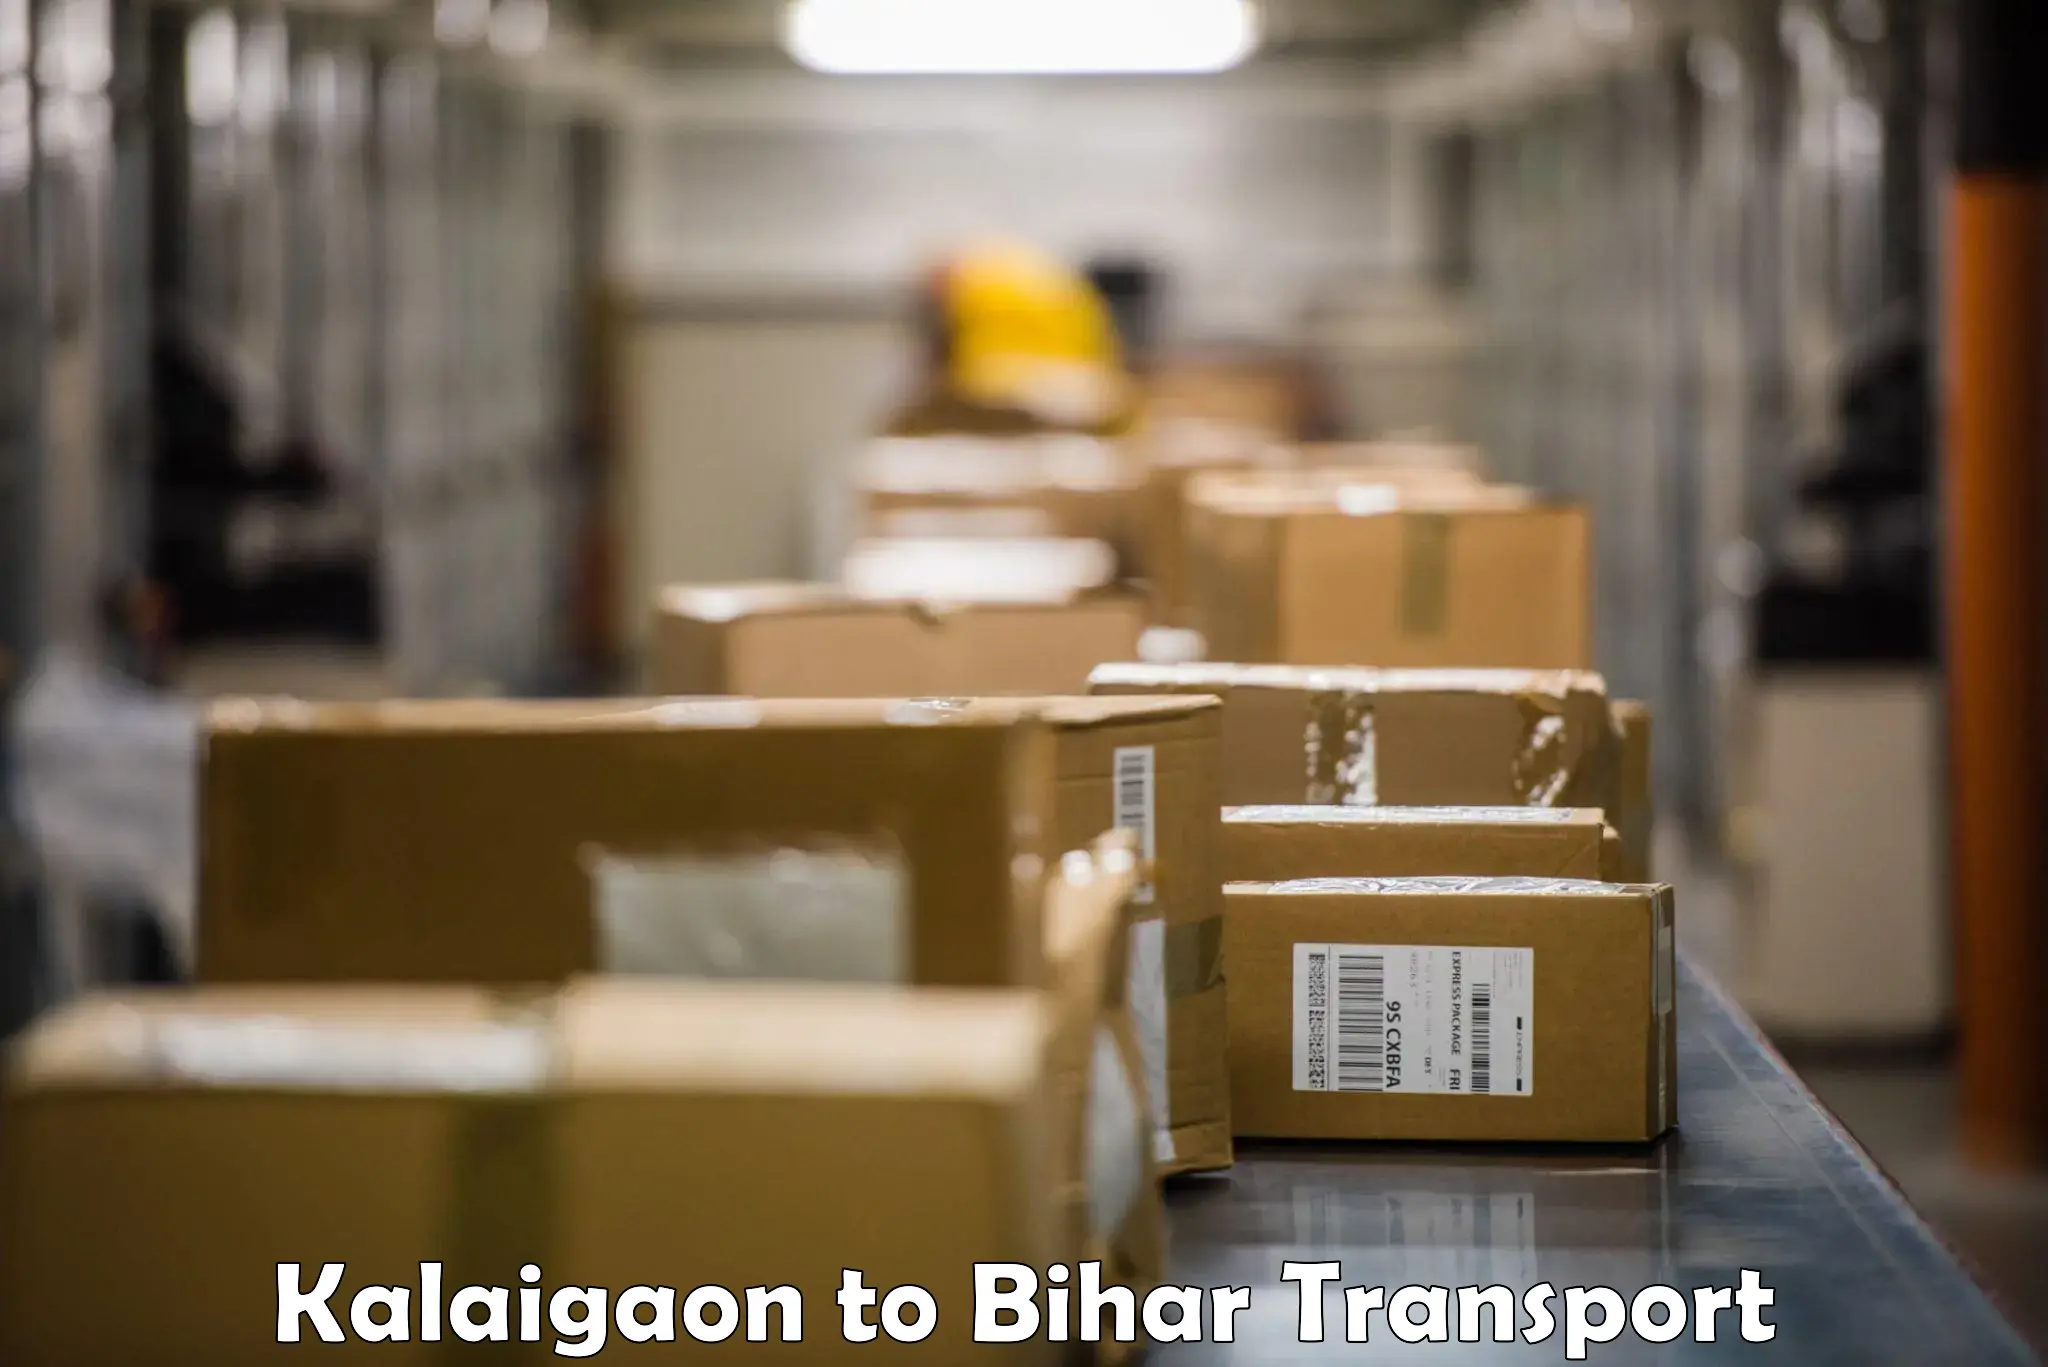 Furniture transport service Kalaigaon to Sikandara Jamui